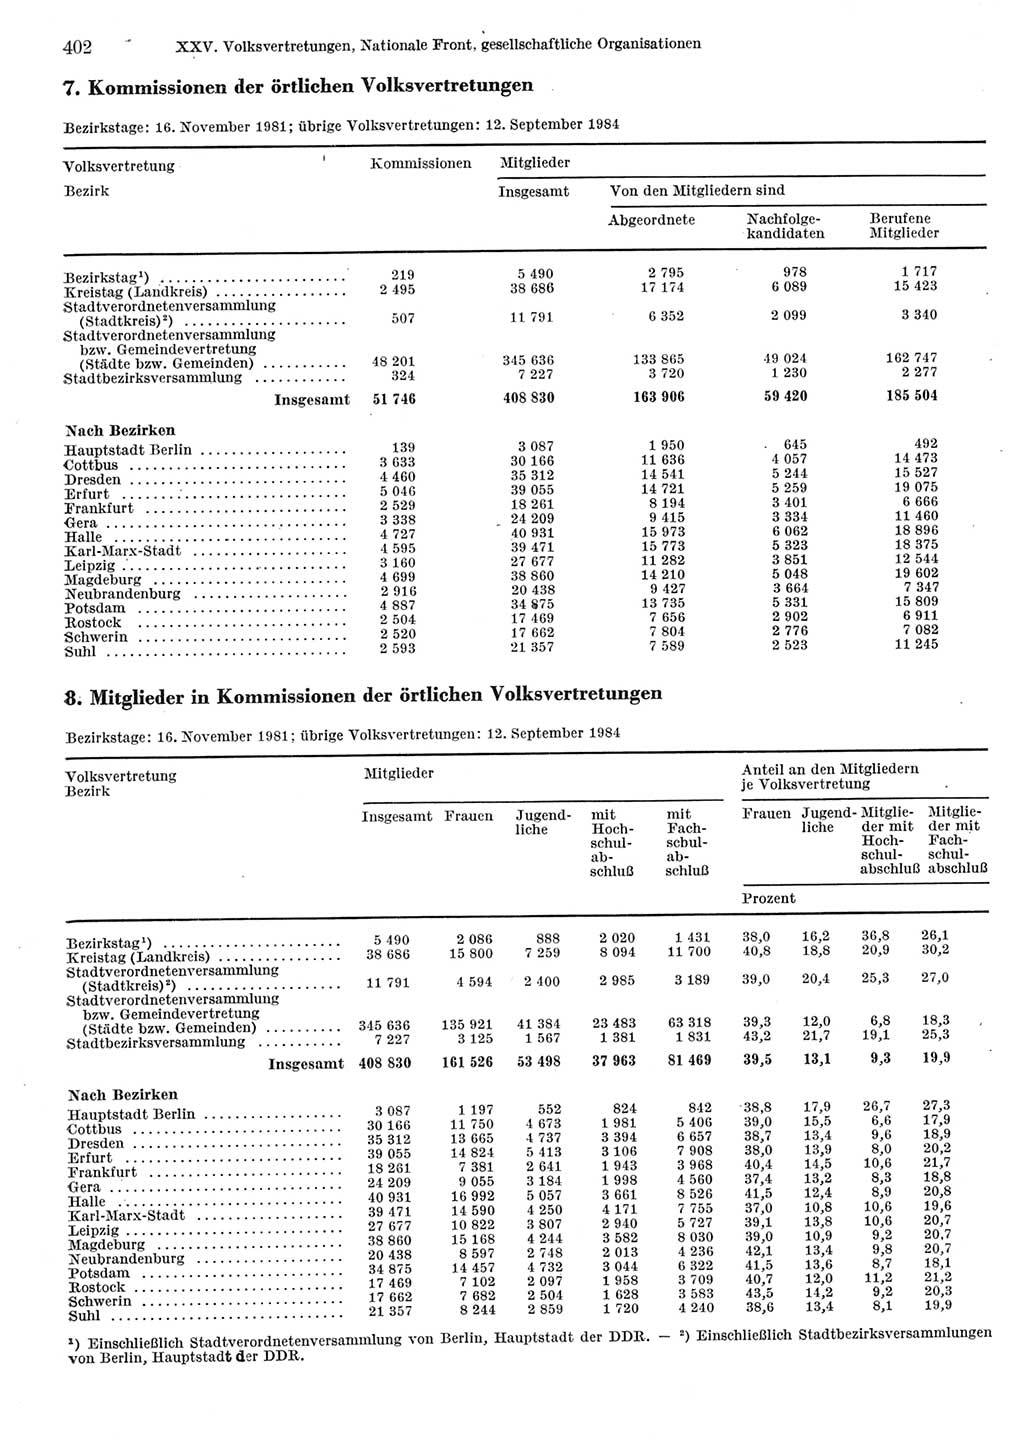 Statistisches Jahrbuch der Deutschen Demokratischen Republik (DDR) 1985, Seite 402 (Stat. Jb. DDR 1985, S. 402)